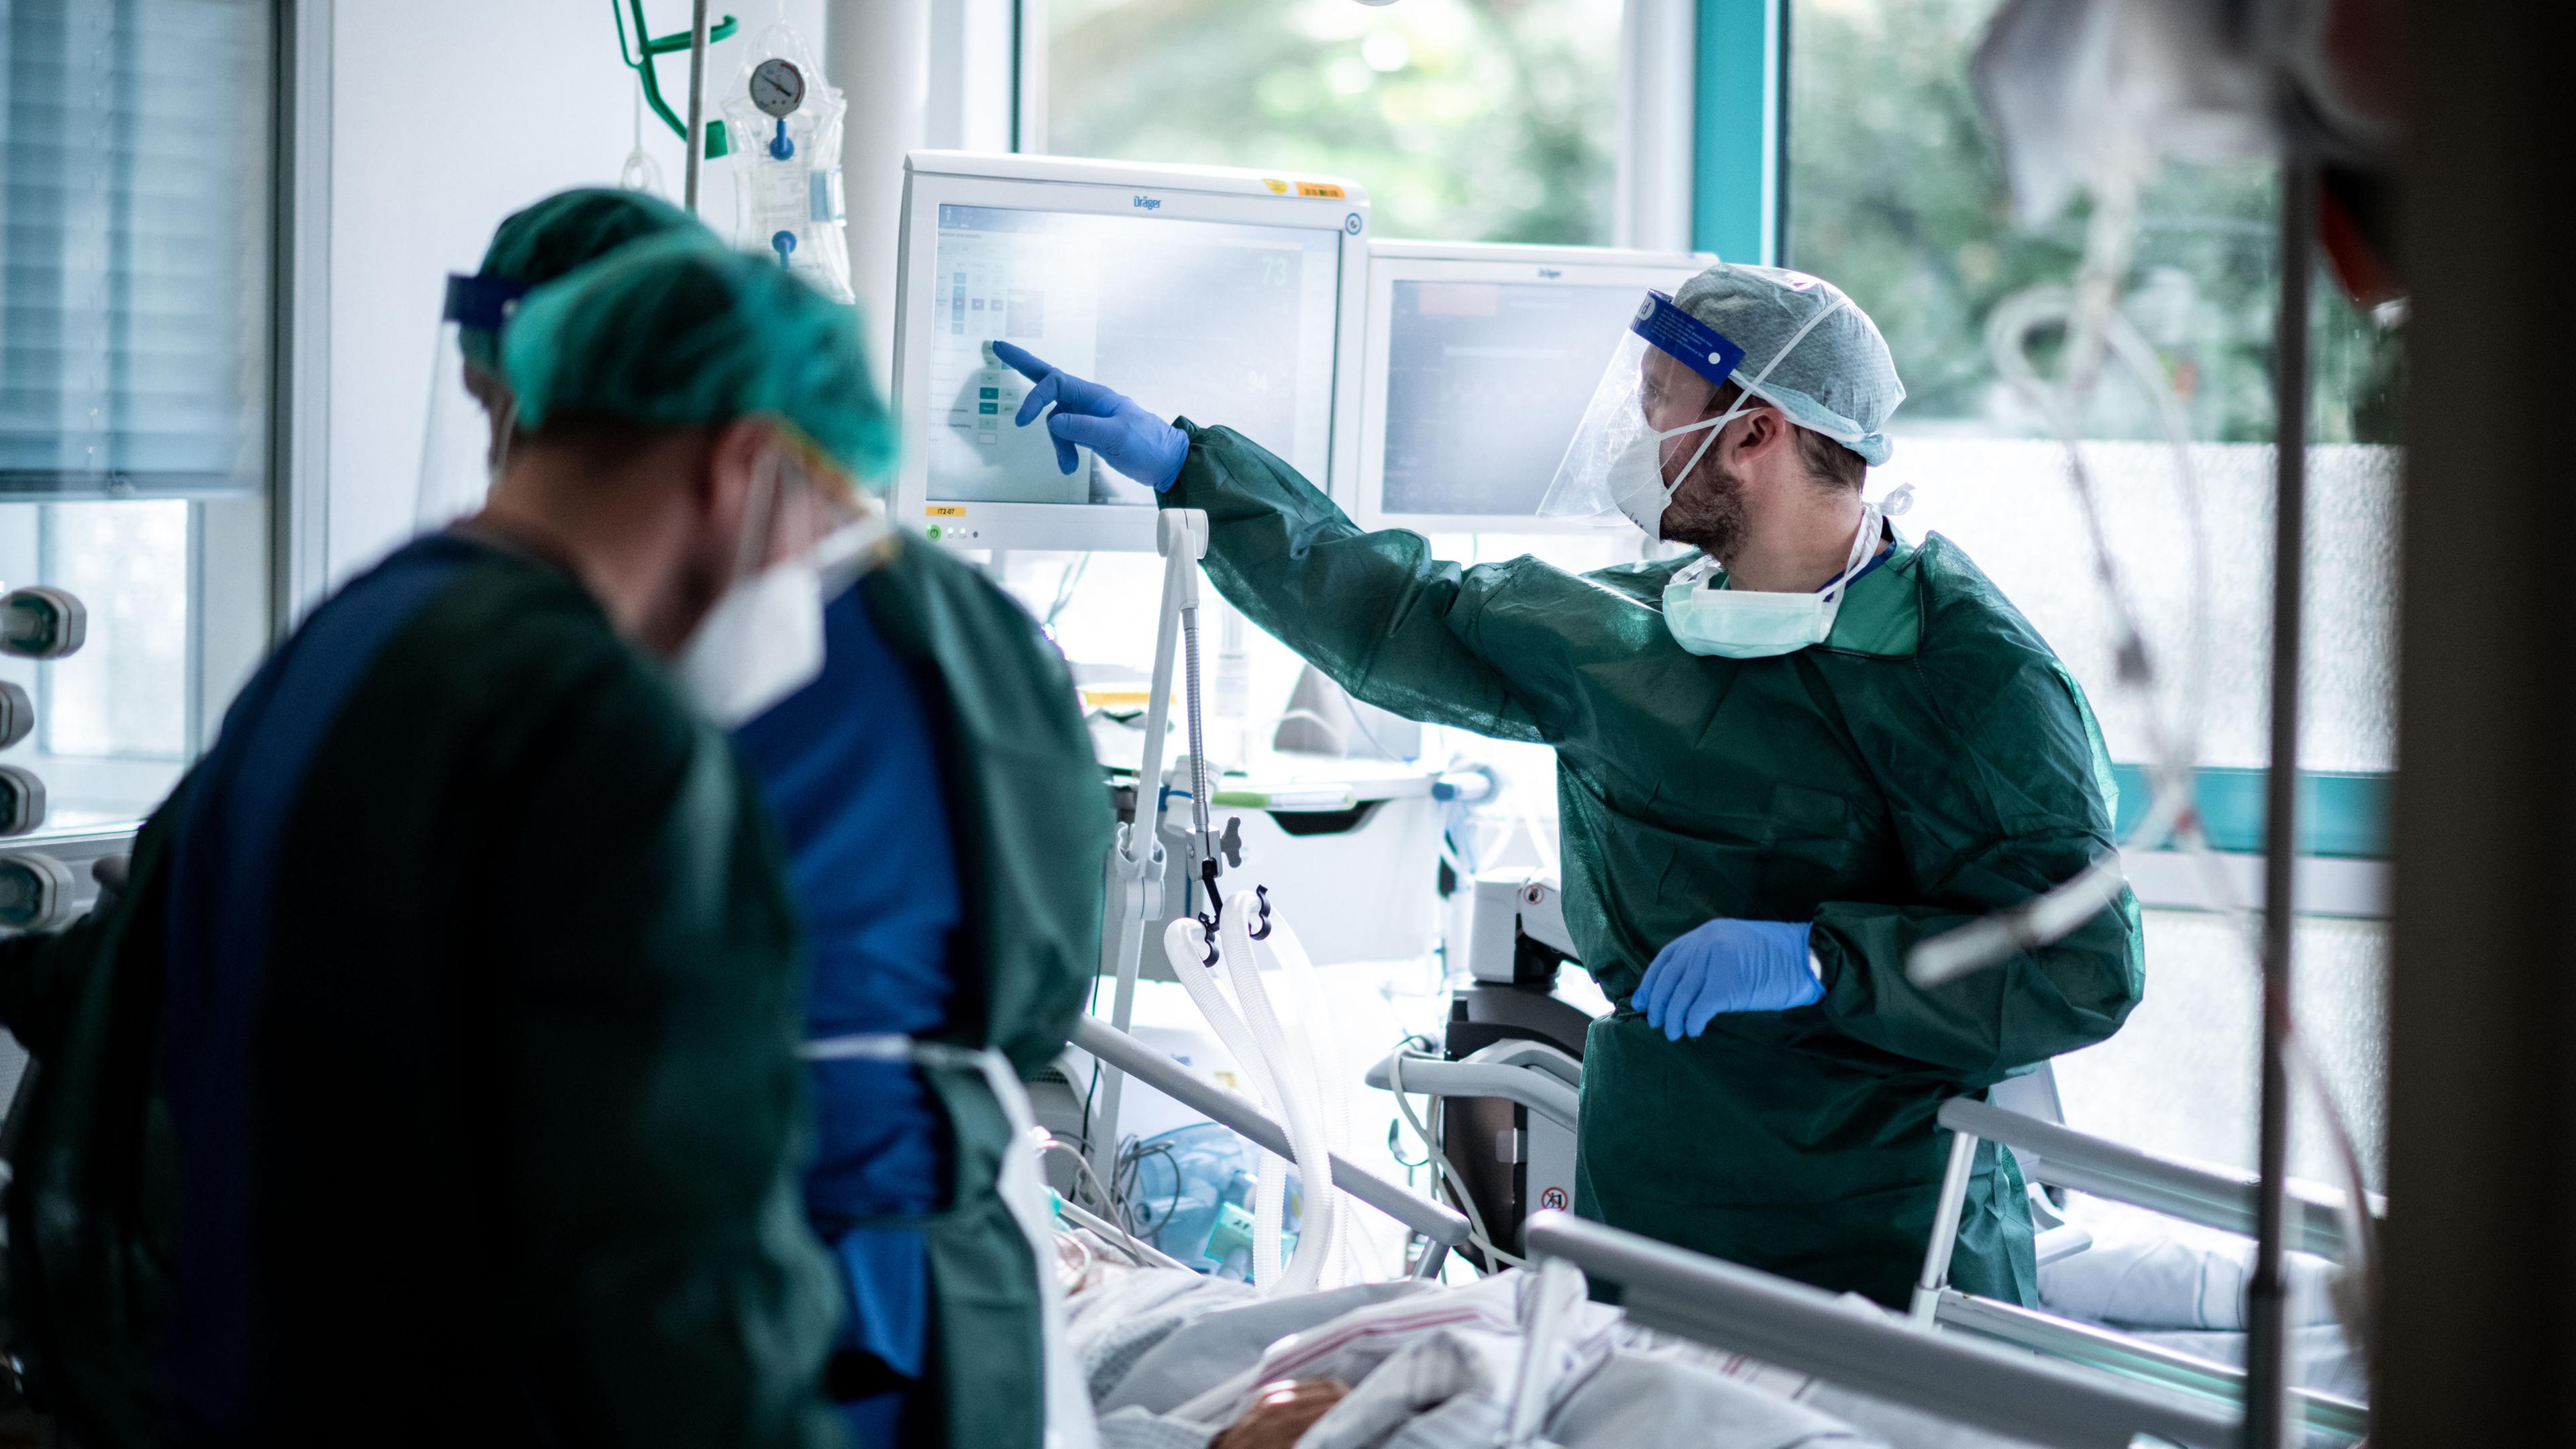 Mitarbeitende der Pflege in Schutzkleidung behandeln einen Patienten in Essen, Nordrhein-Westfalen am 28.10.2020